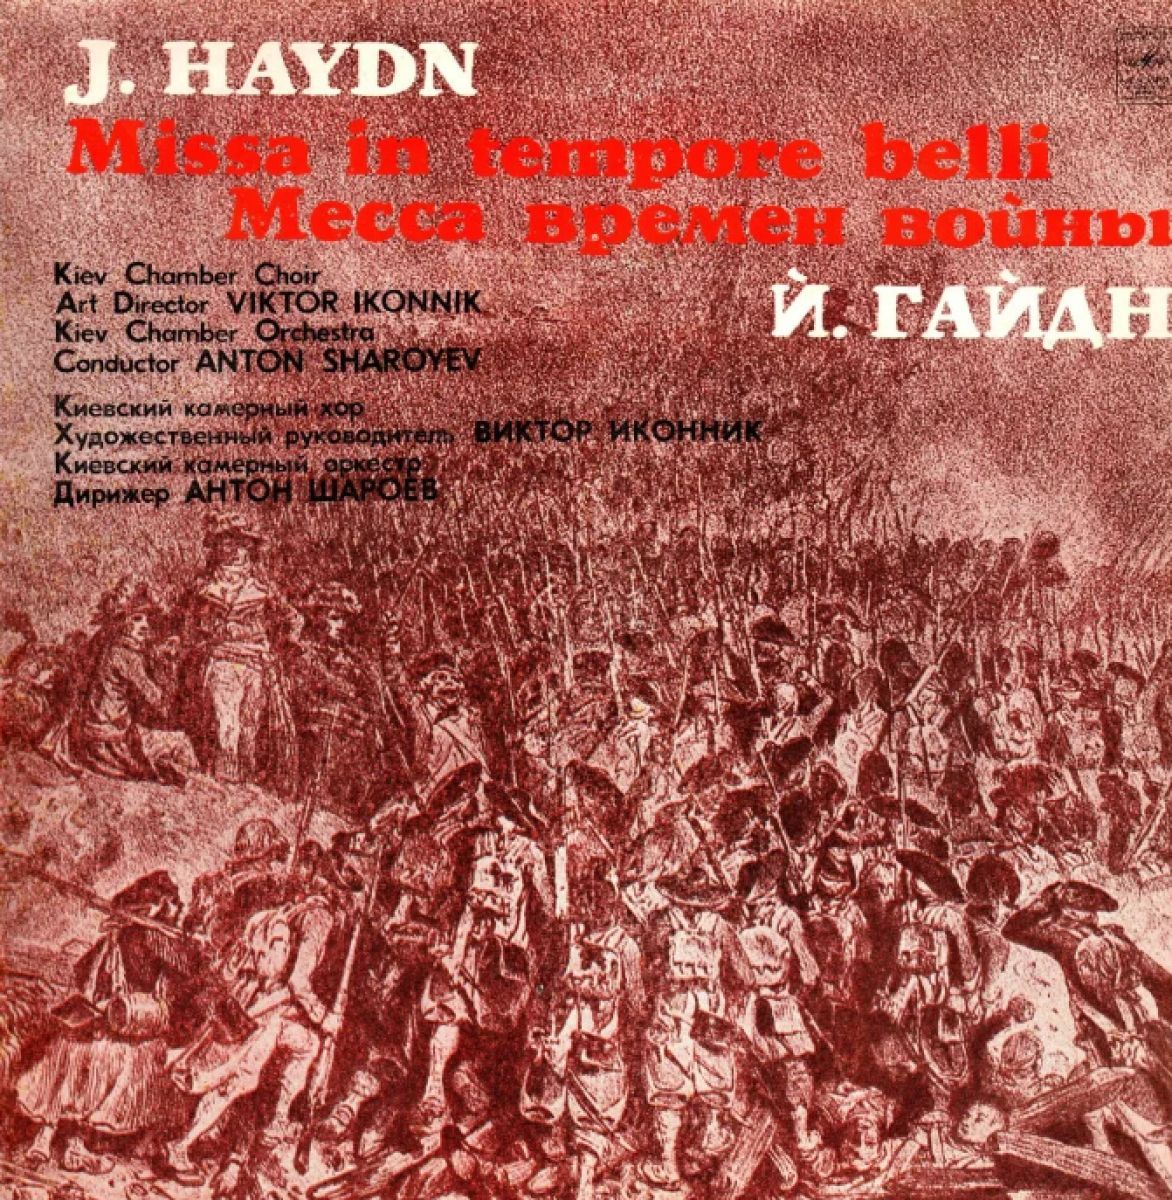 Время мессы. Haydn Nelson Messe фирма мелодия. Музыка в историческое время – IX-XXI века.. Месса с литаврами (Paukenmesse) для солистов, хора и оркестра.